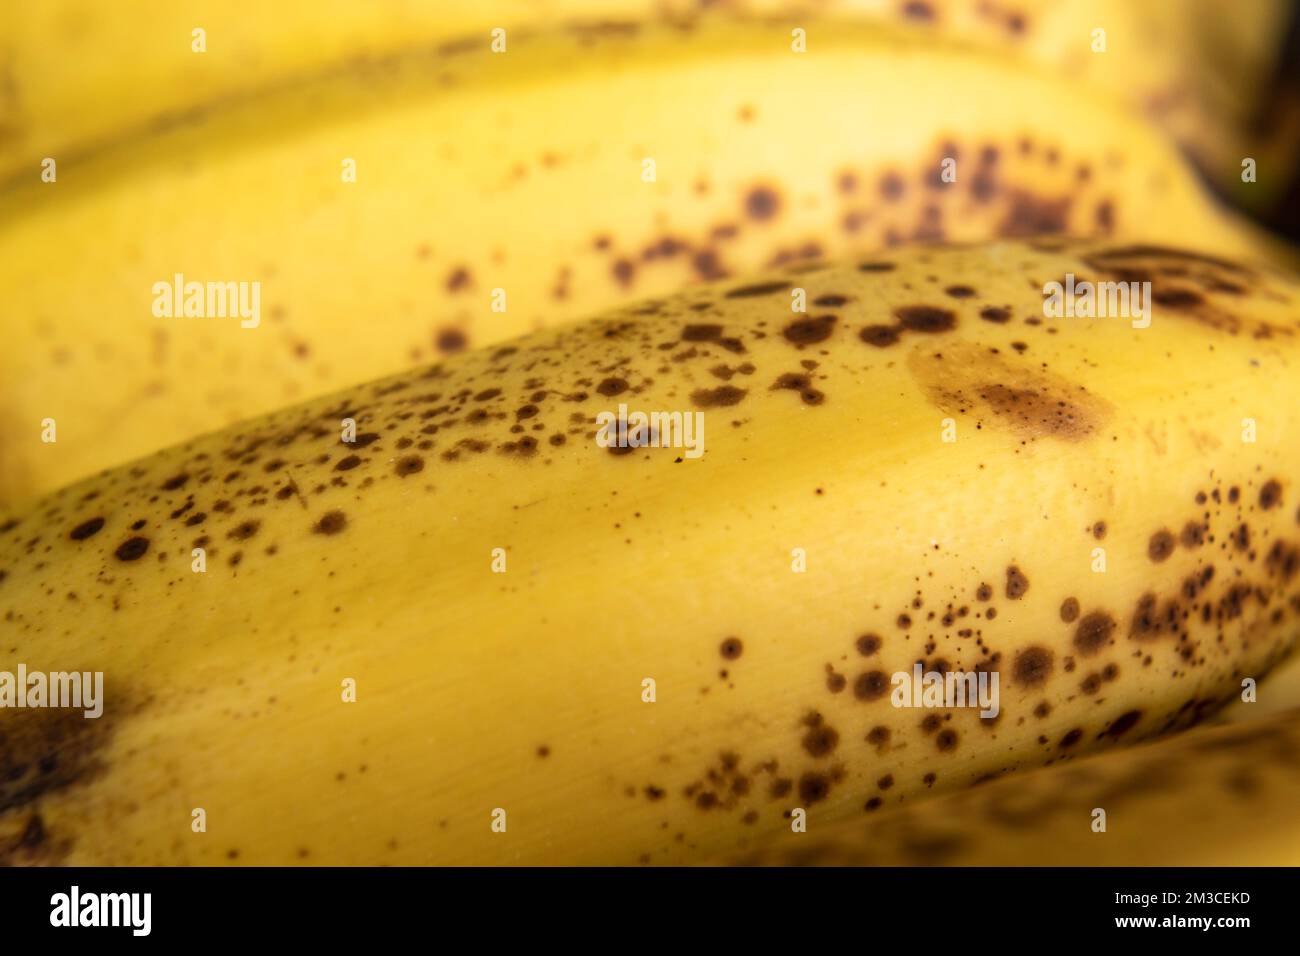 Makrofotografie zu einer frischen, gelben Sommersprossen-Bananenstruktur. Obst- und Texturkonzept Stockfoto